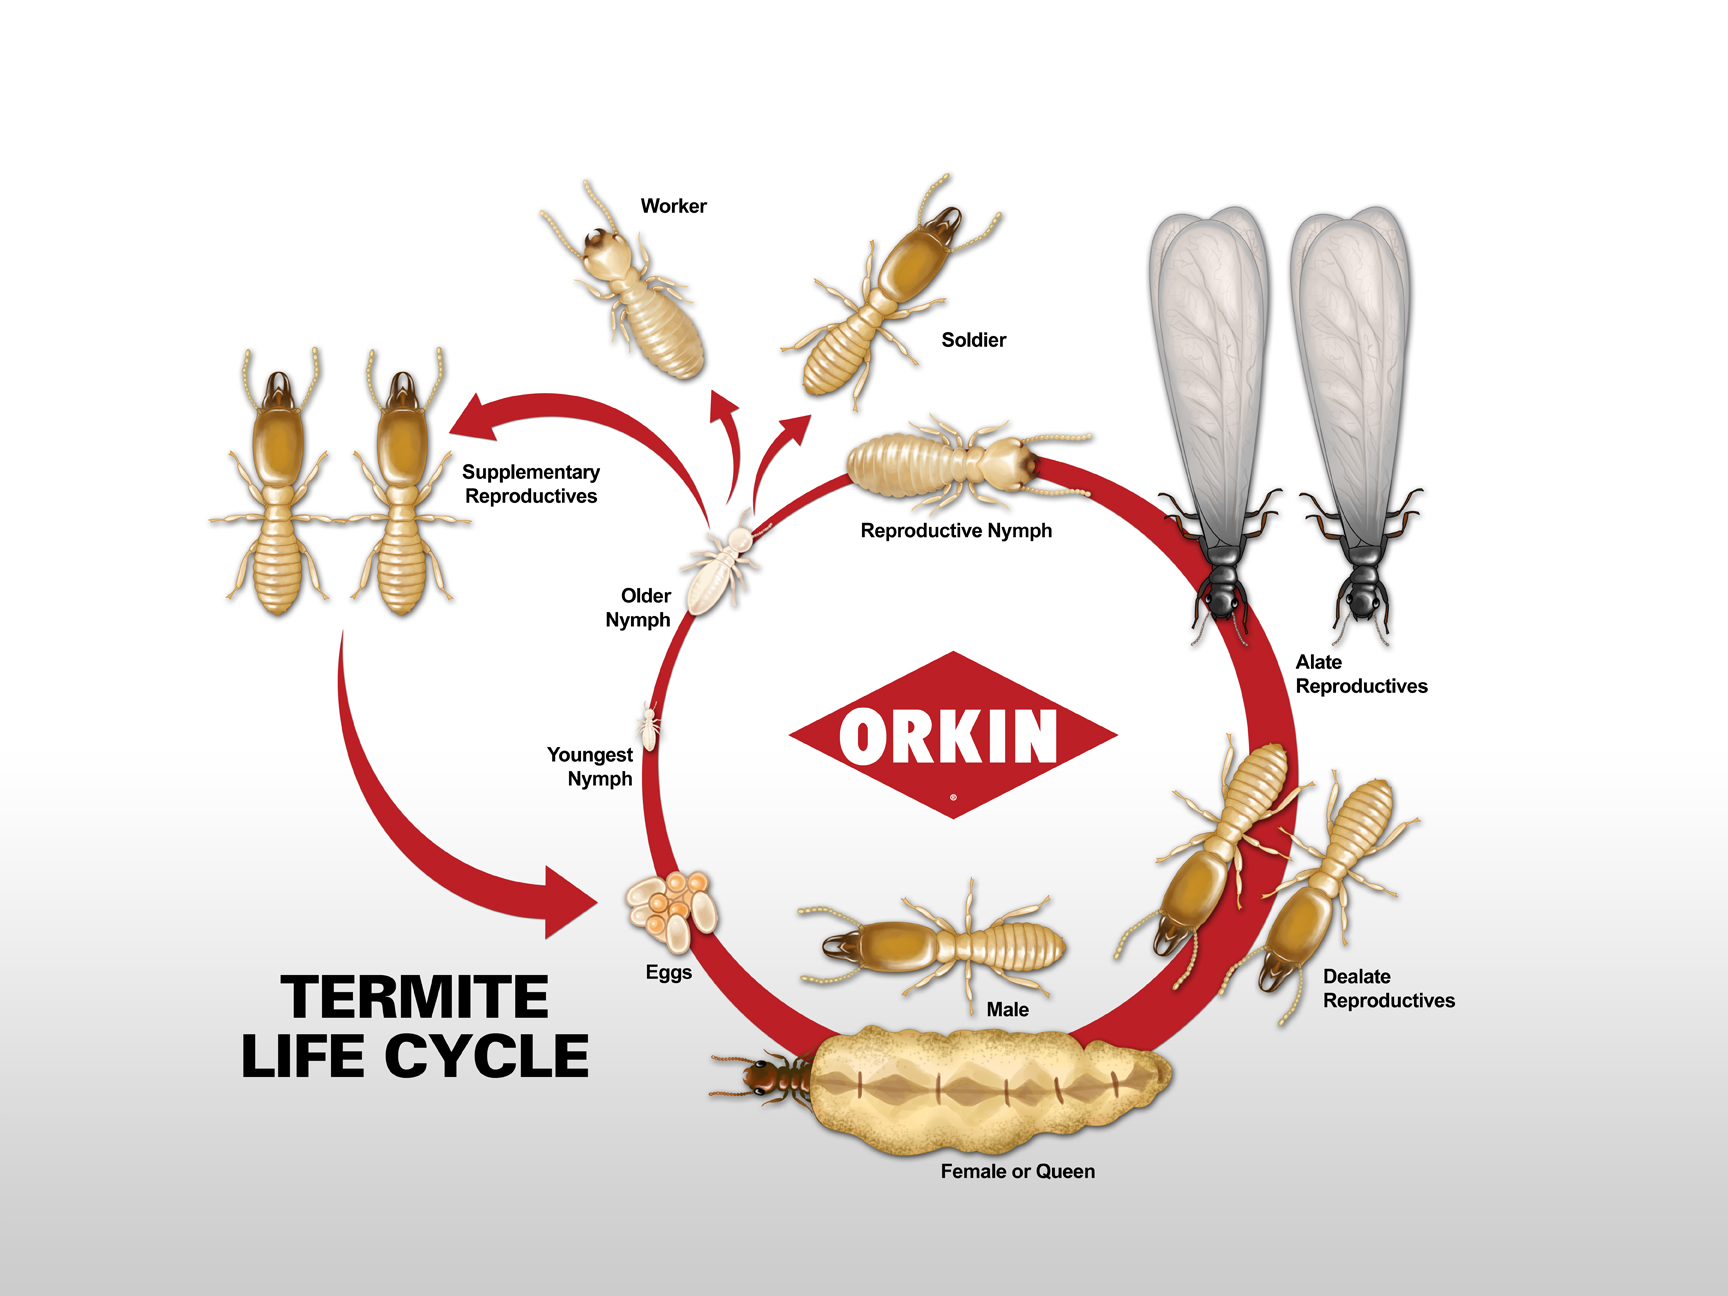 Do termites go through metamorphosis?